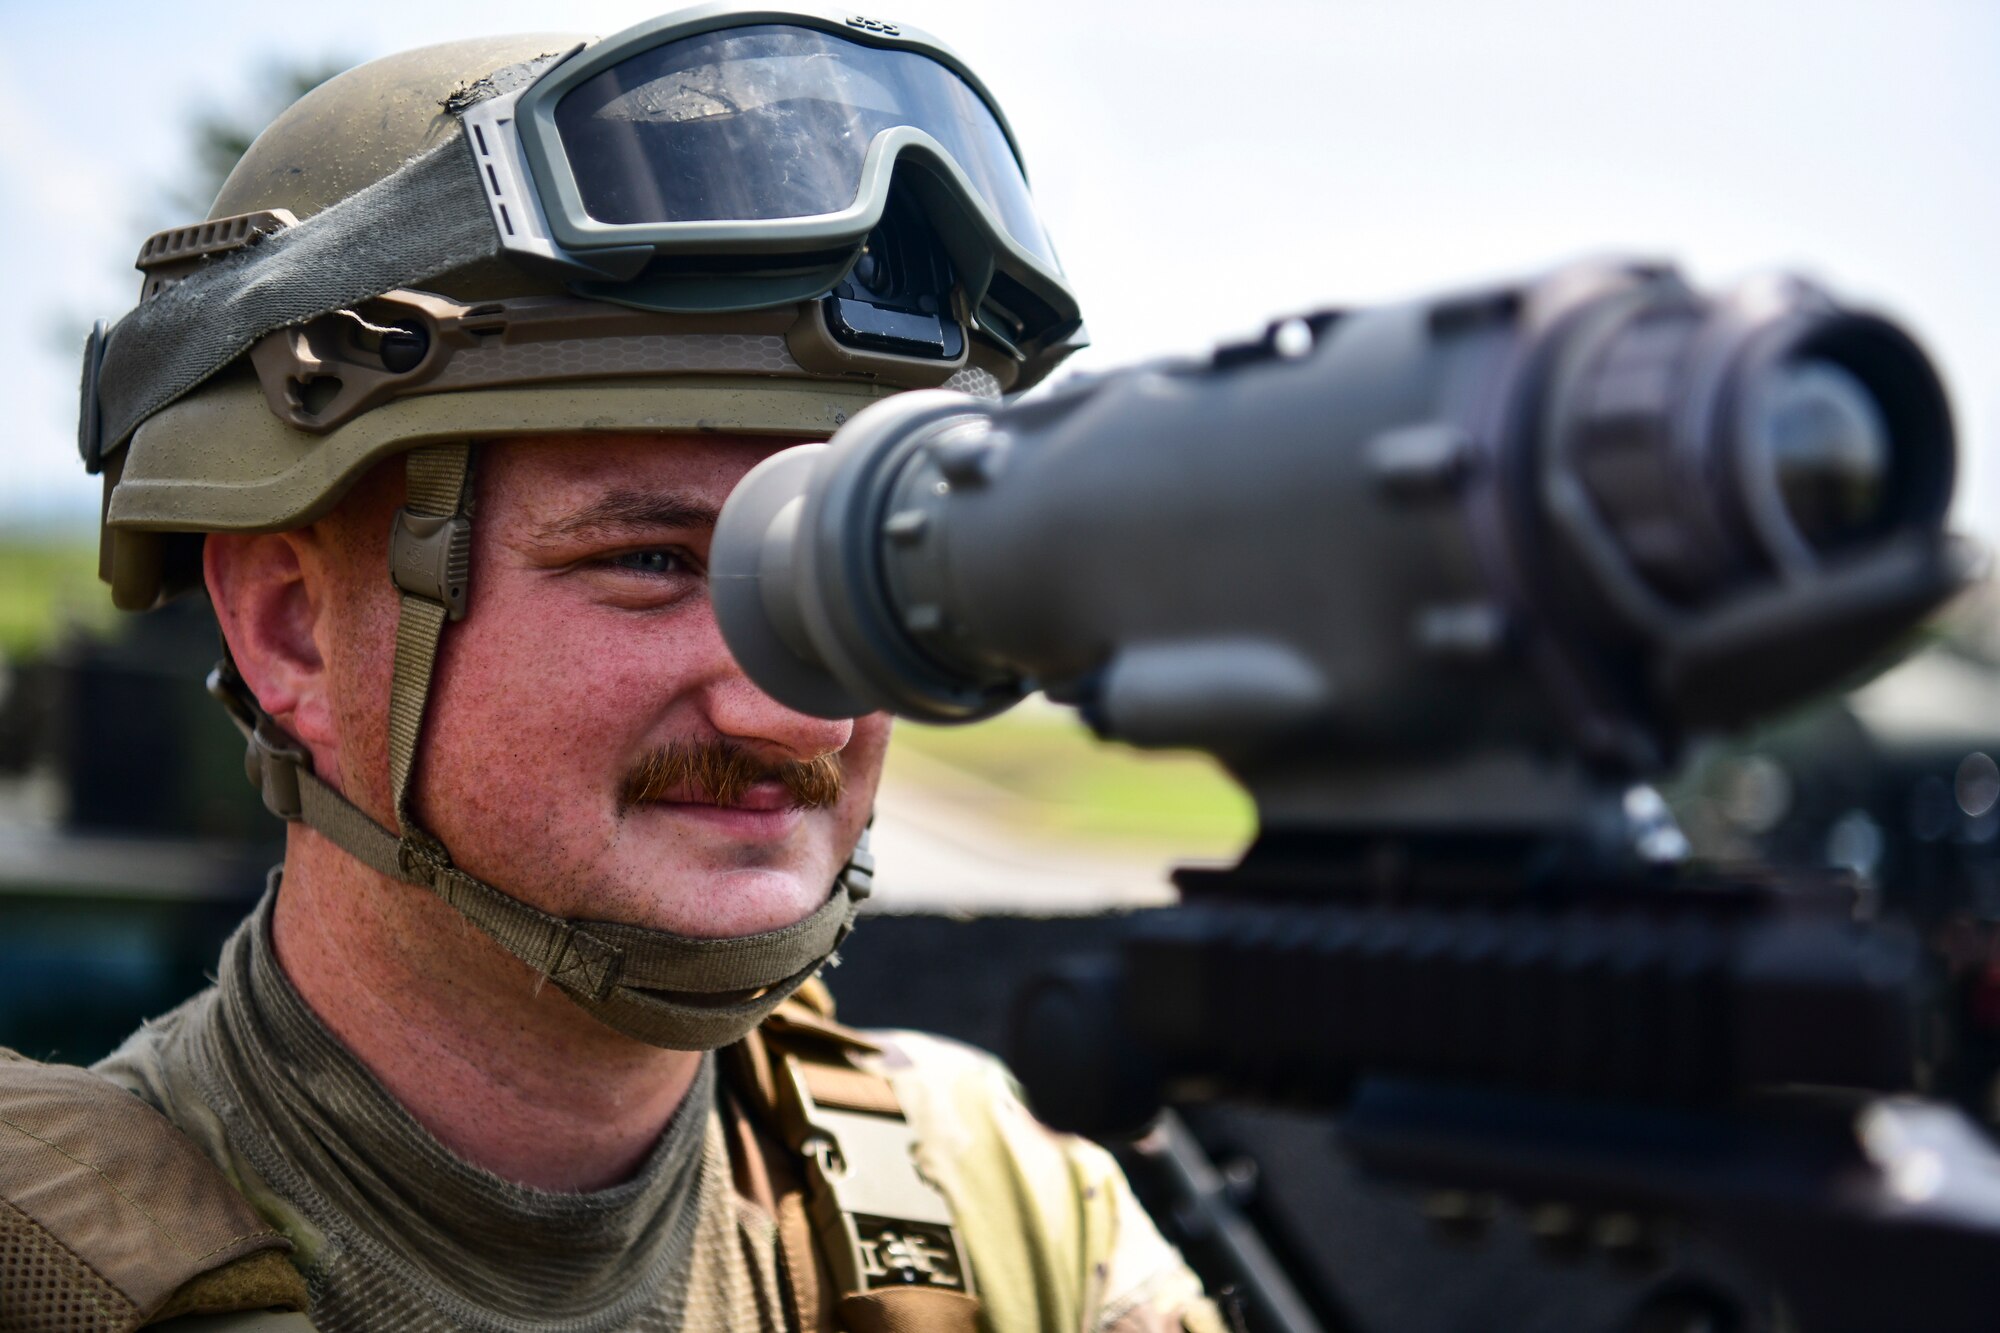 An Airman looks into a machine gun.